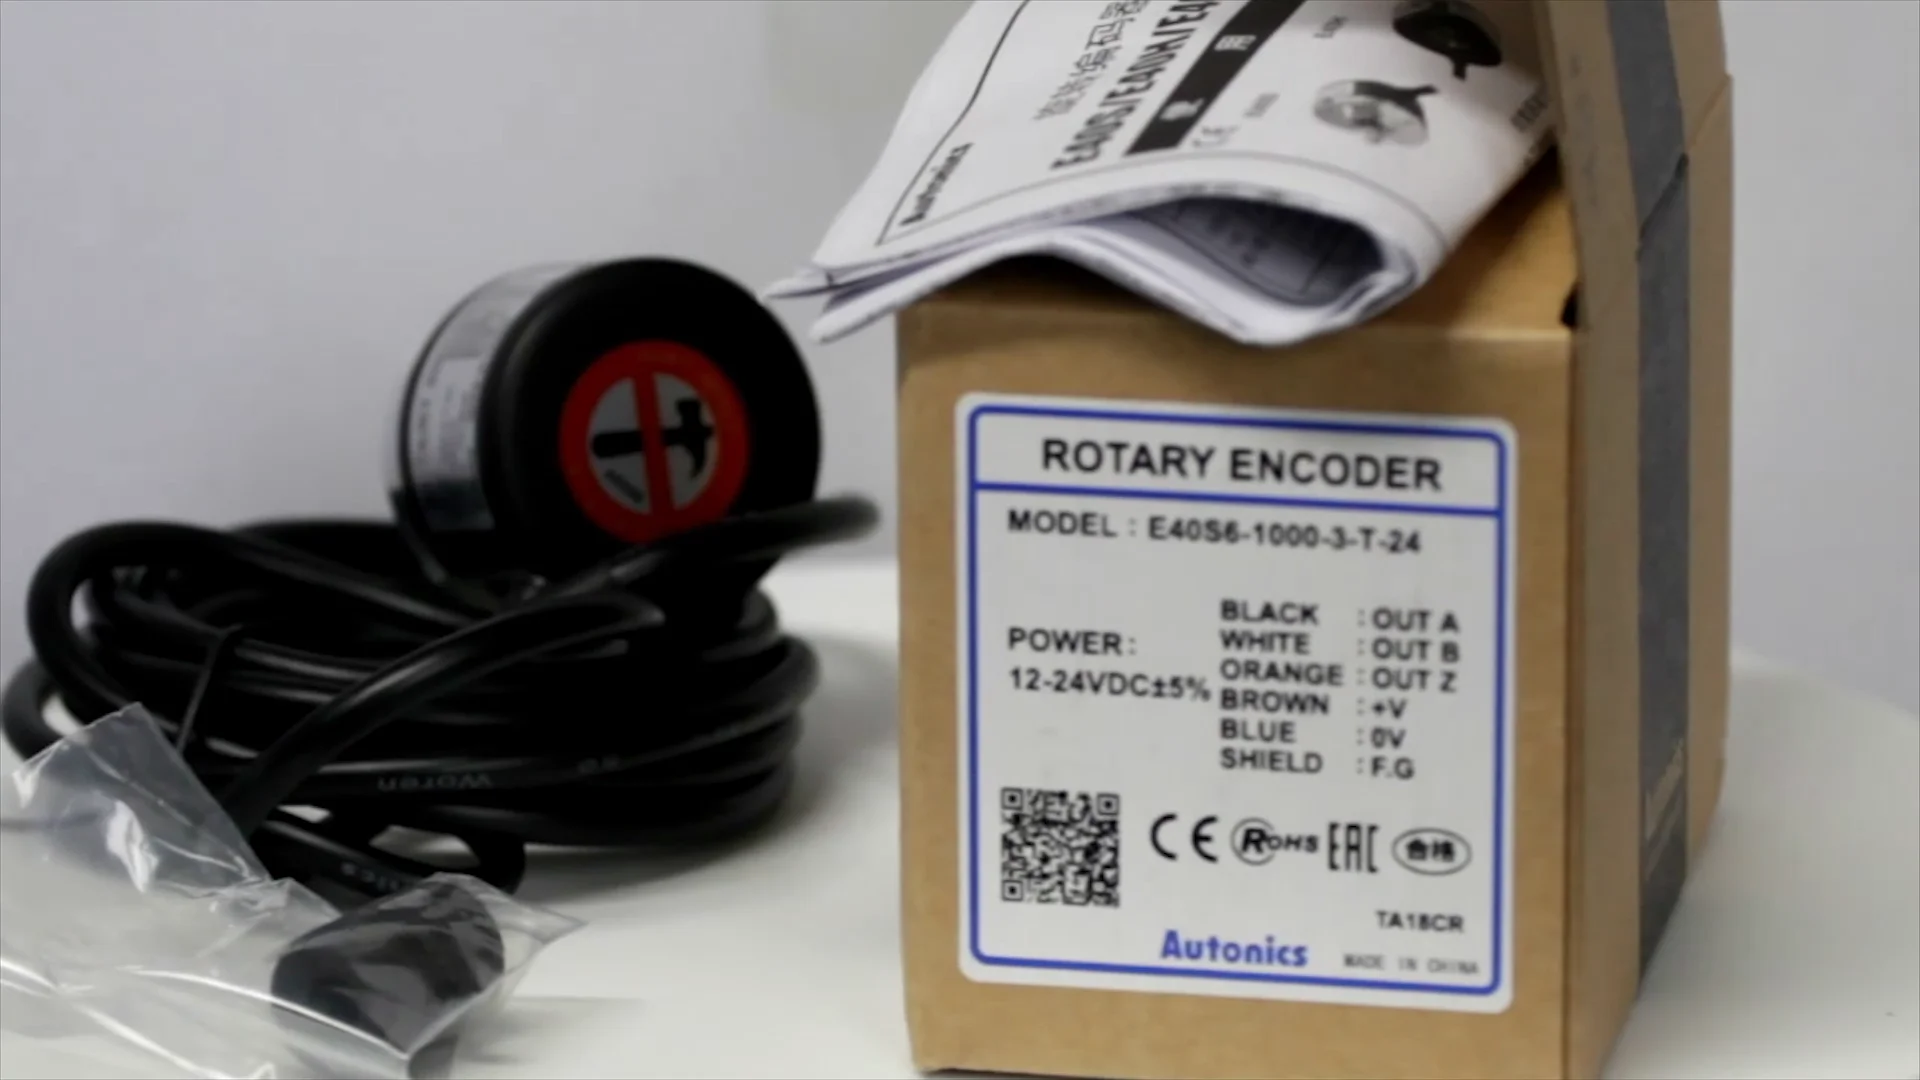 Incremental rotary encoder model E40S6-600-3-N-24 Diameter 40mm Shaft Autonics encoder/rotary encoderencoder